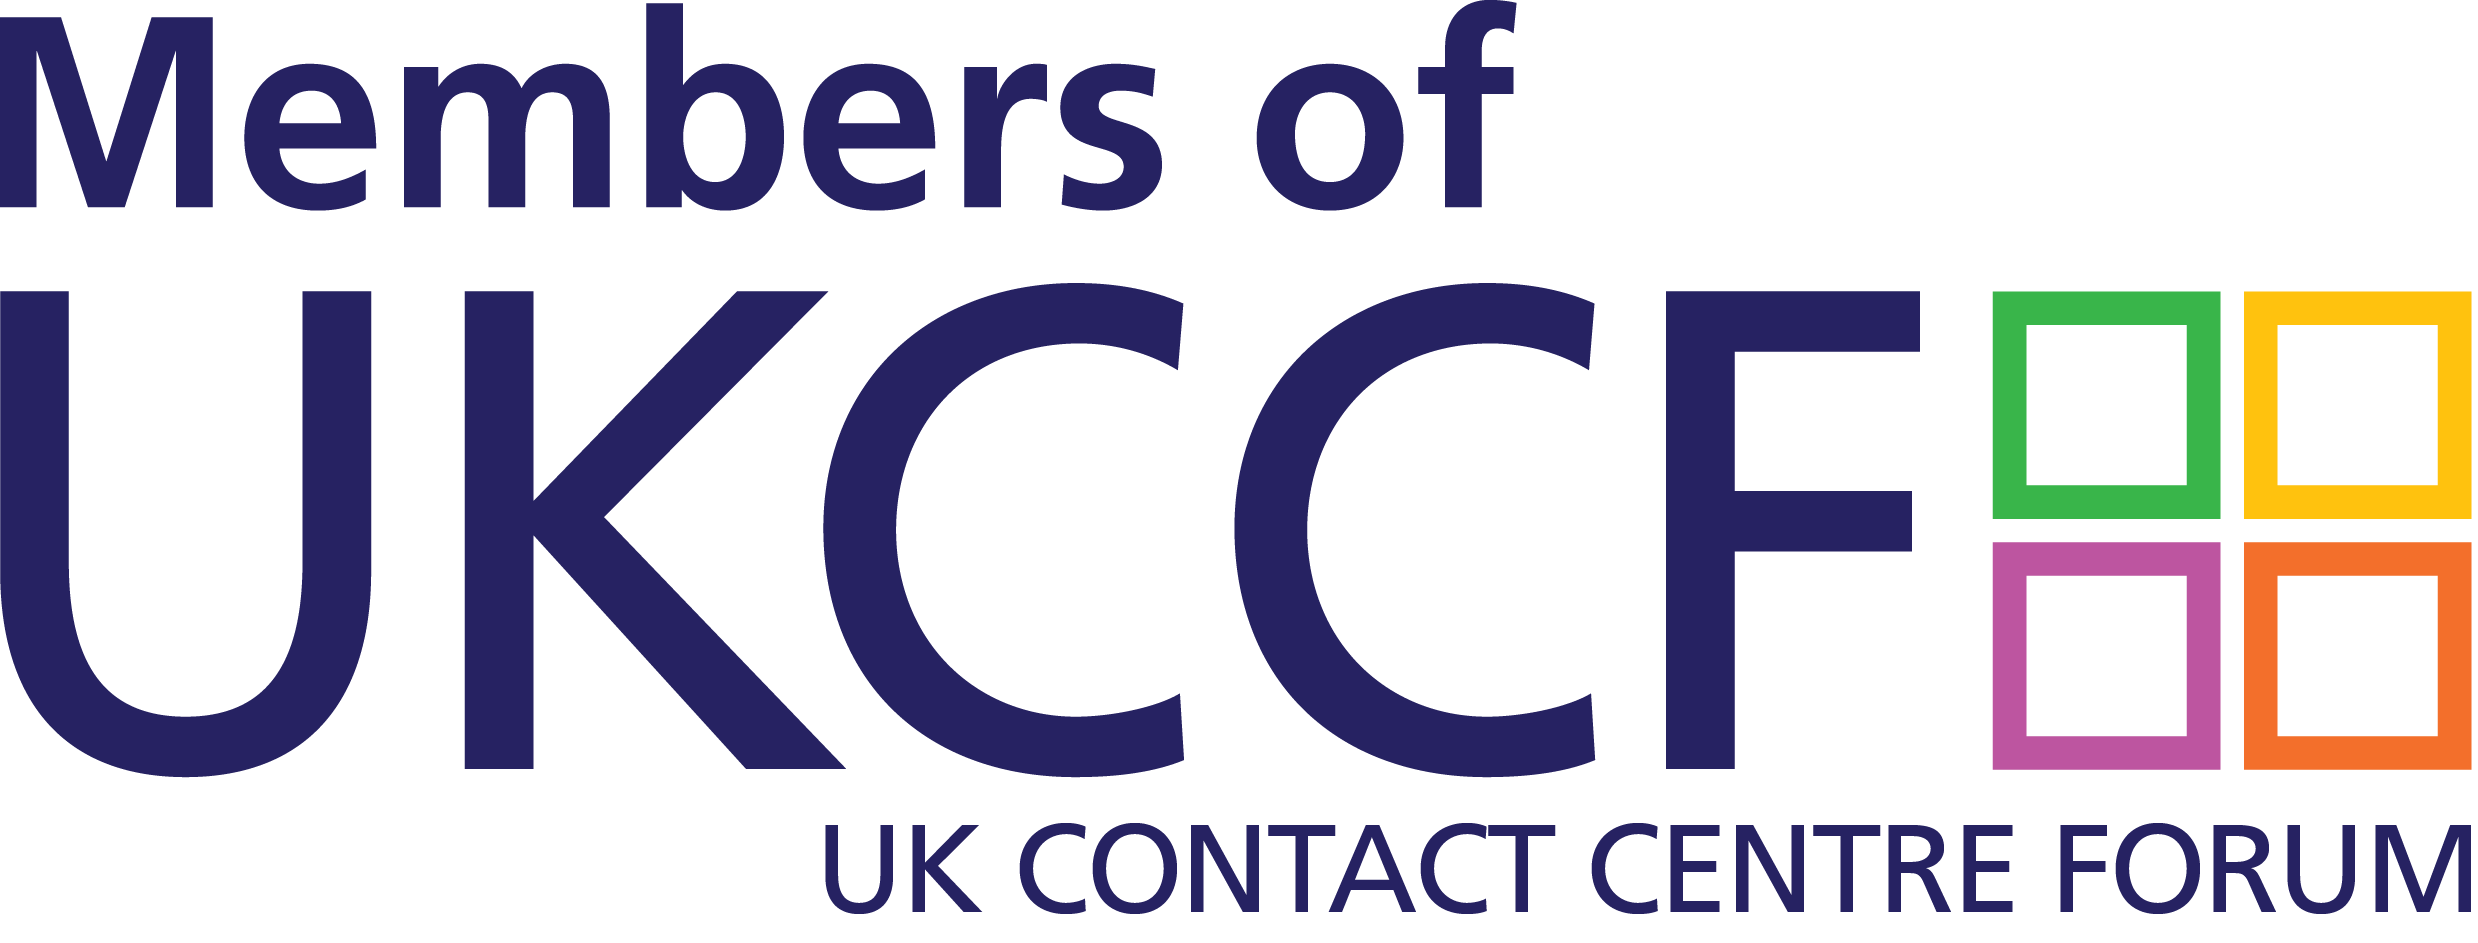 UKCCF Members logo